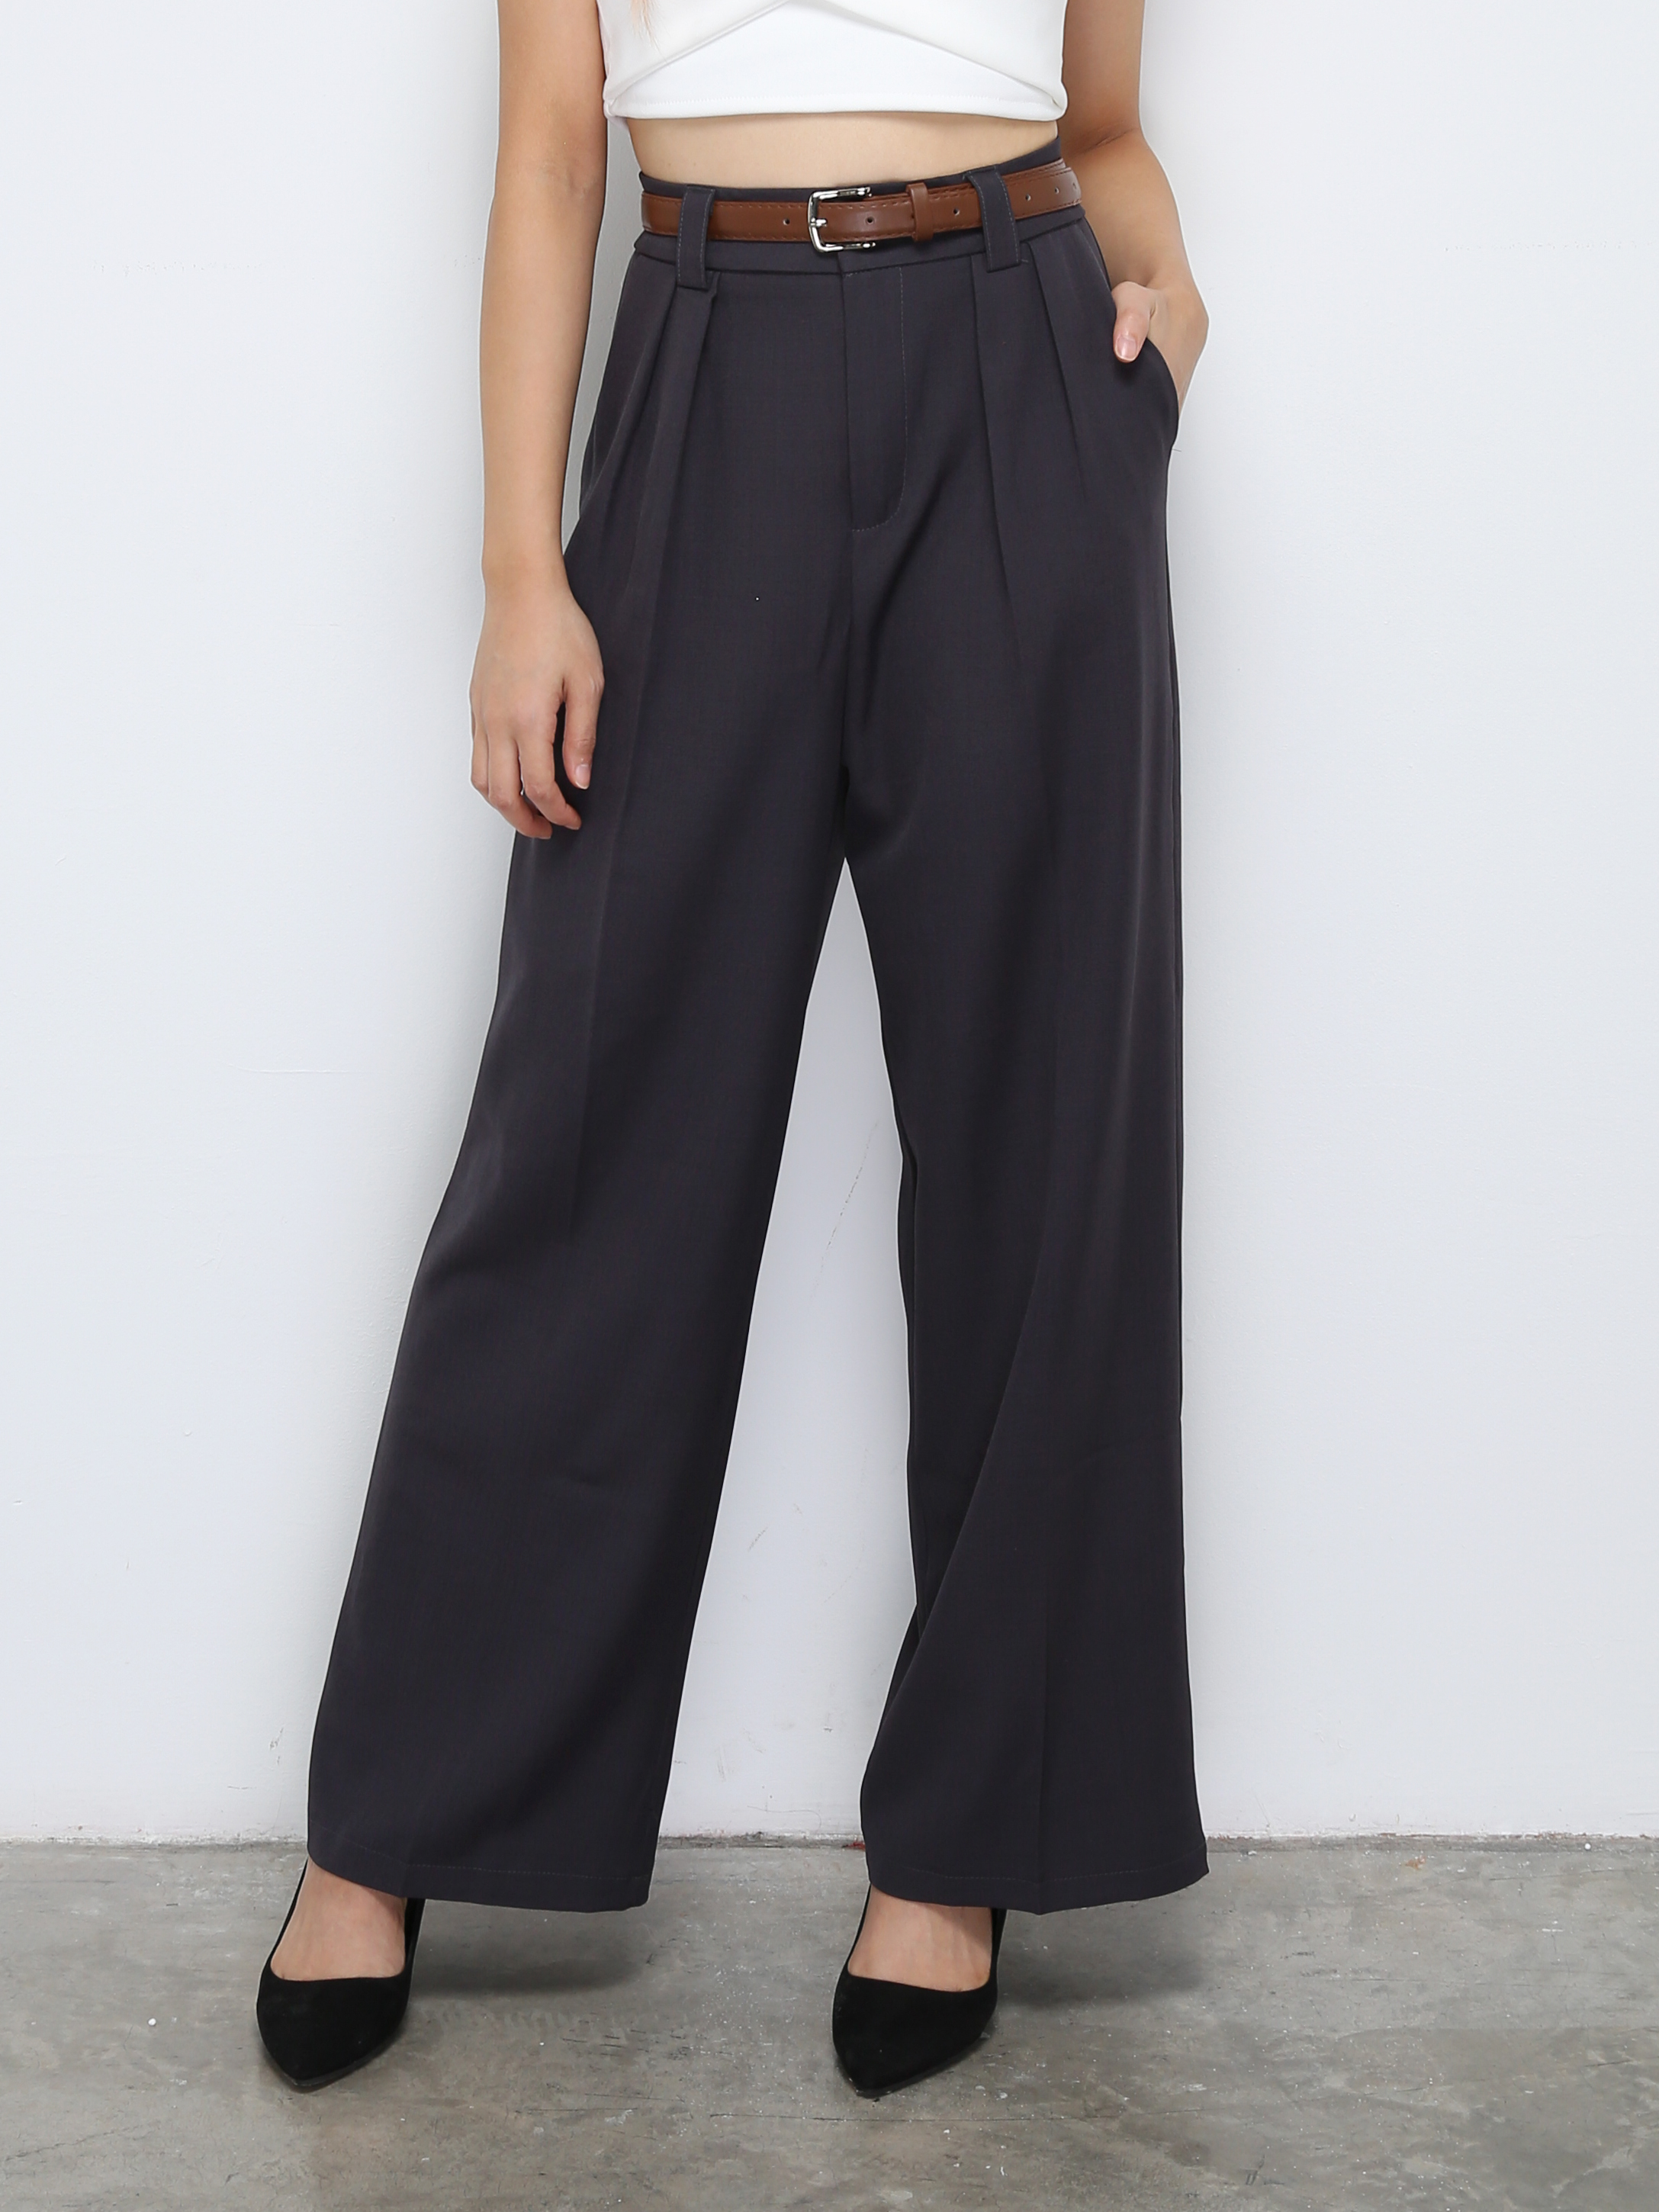 Formal High Waist Side Pocket With Belt Long Pants 30998